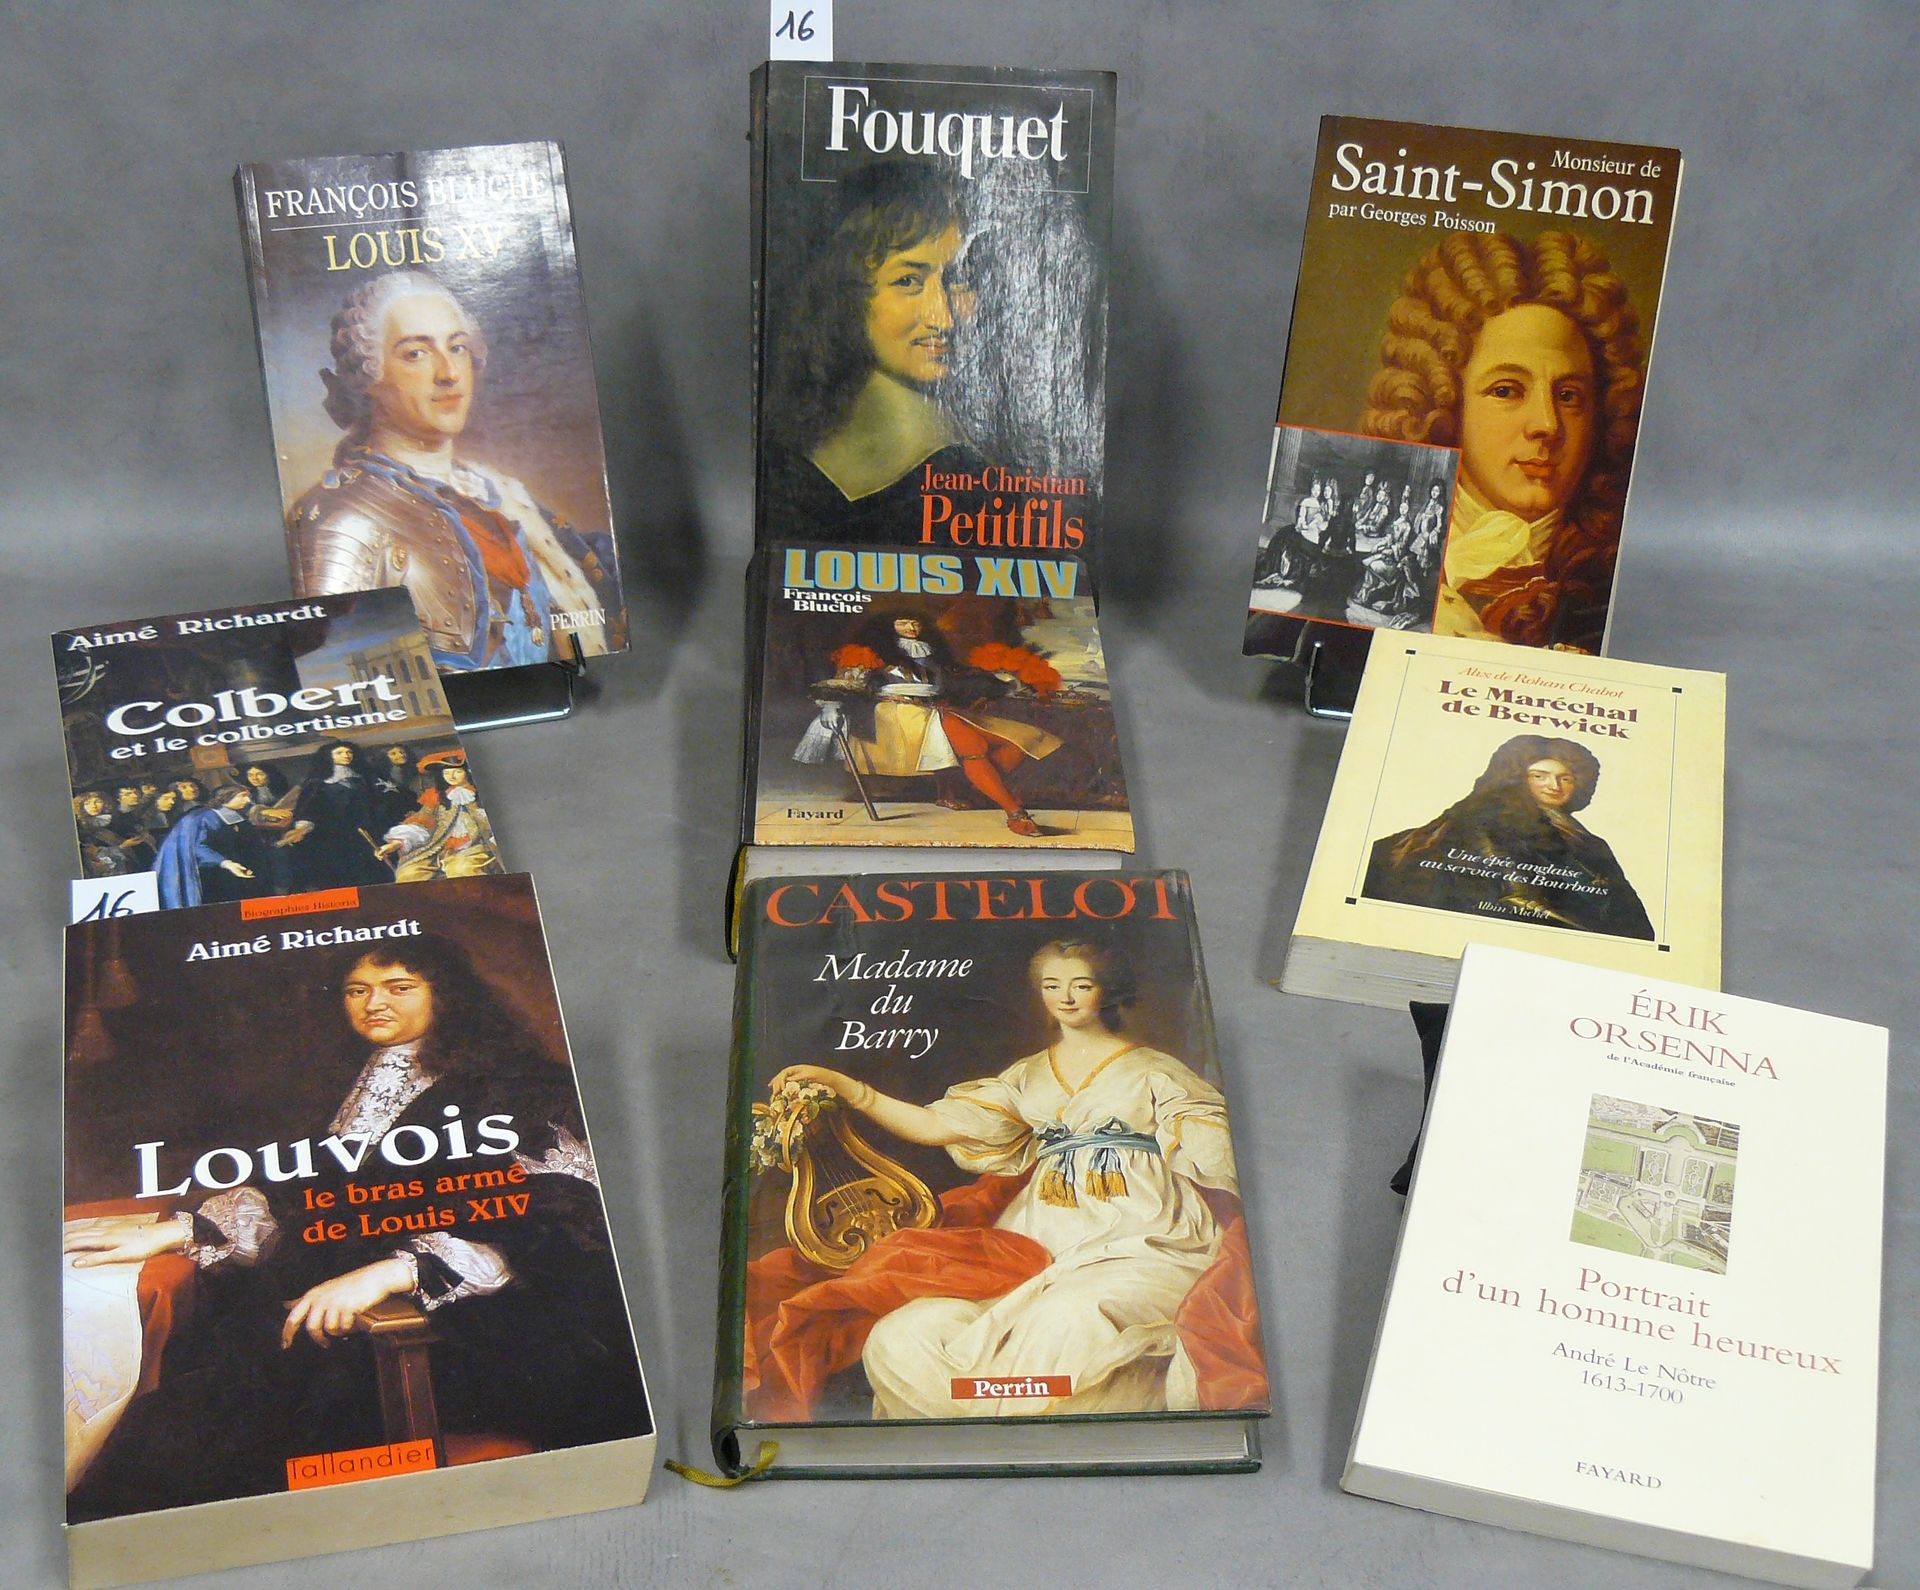 ANCIEN RÉGIME lote de 9 obras sobre el Antiguo Régimen que incluye : Fouquet